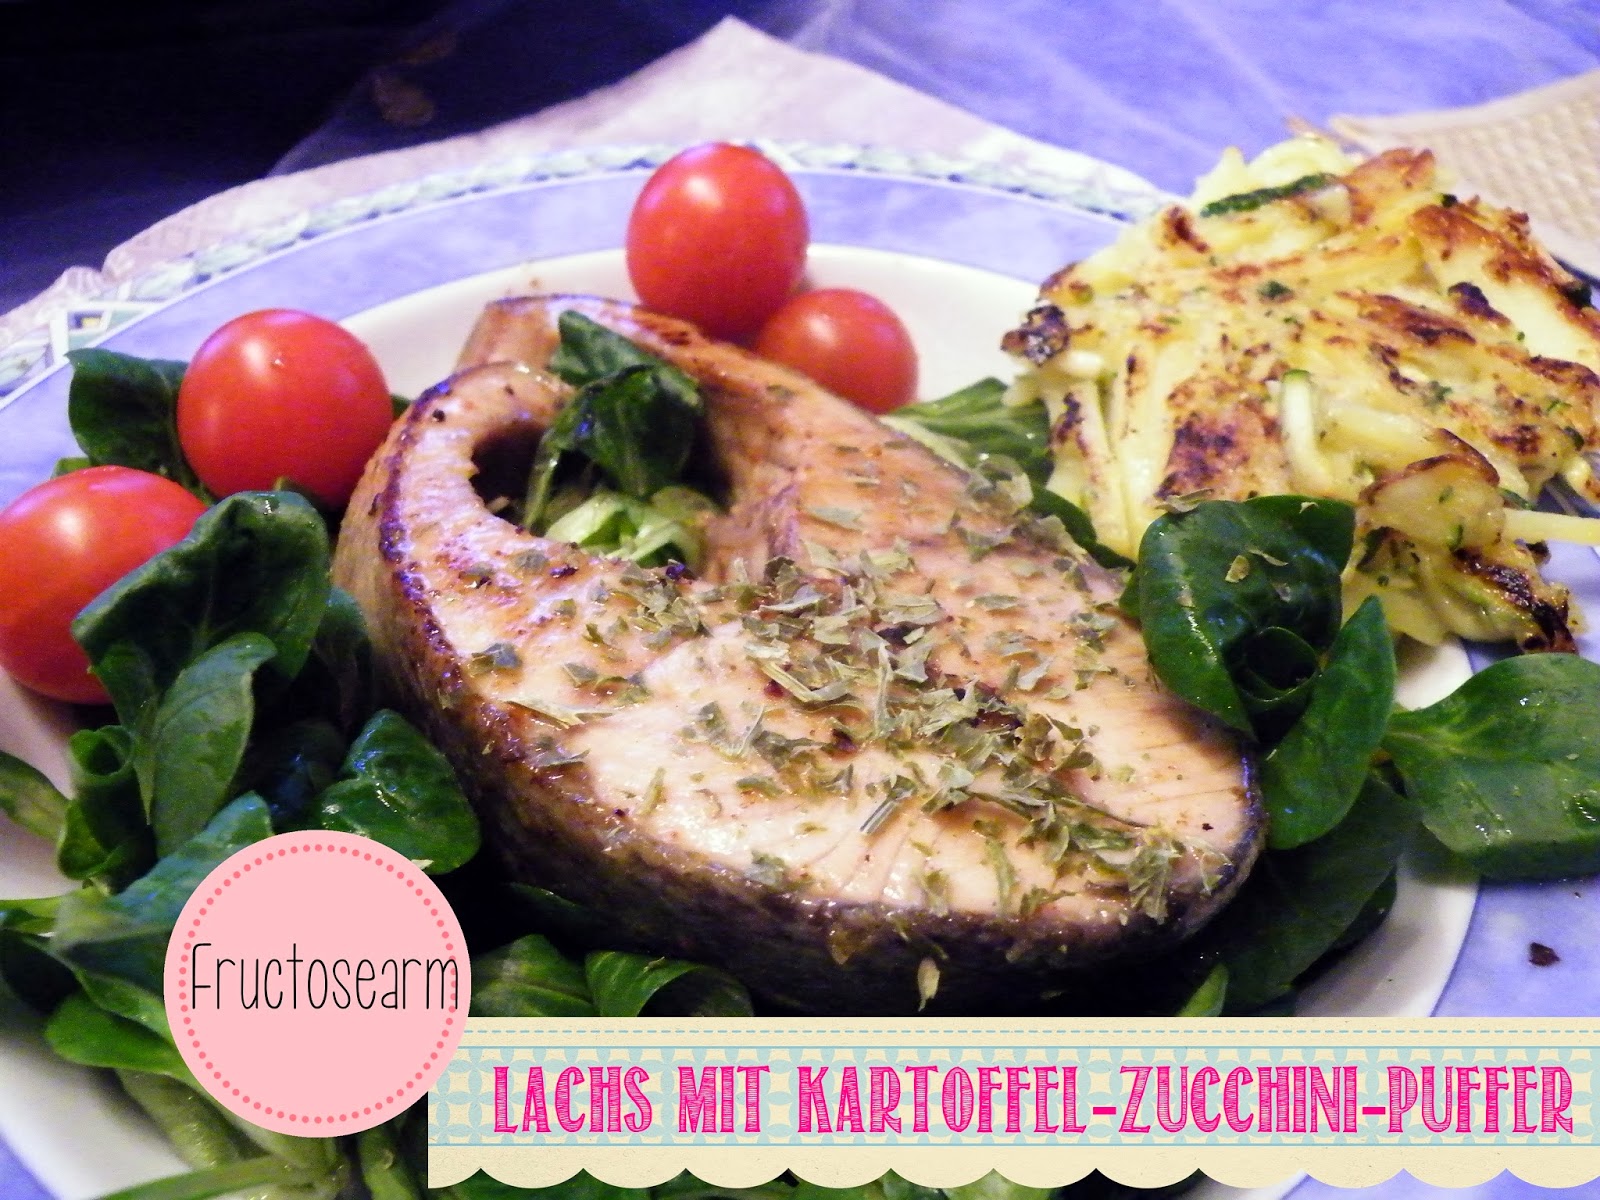 Lebenslieben: Lachs mit Kartoffel-Zucchini-Puffer (fructosearm)